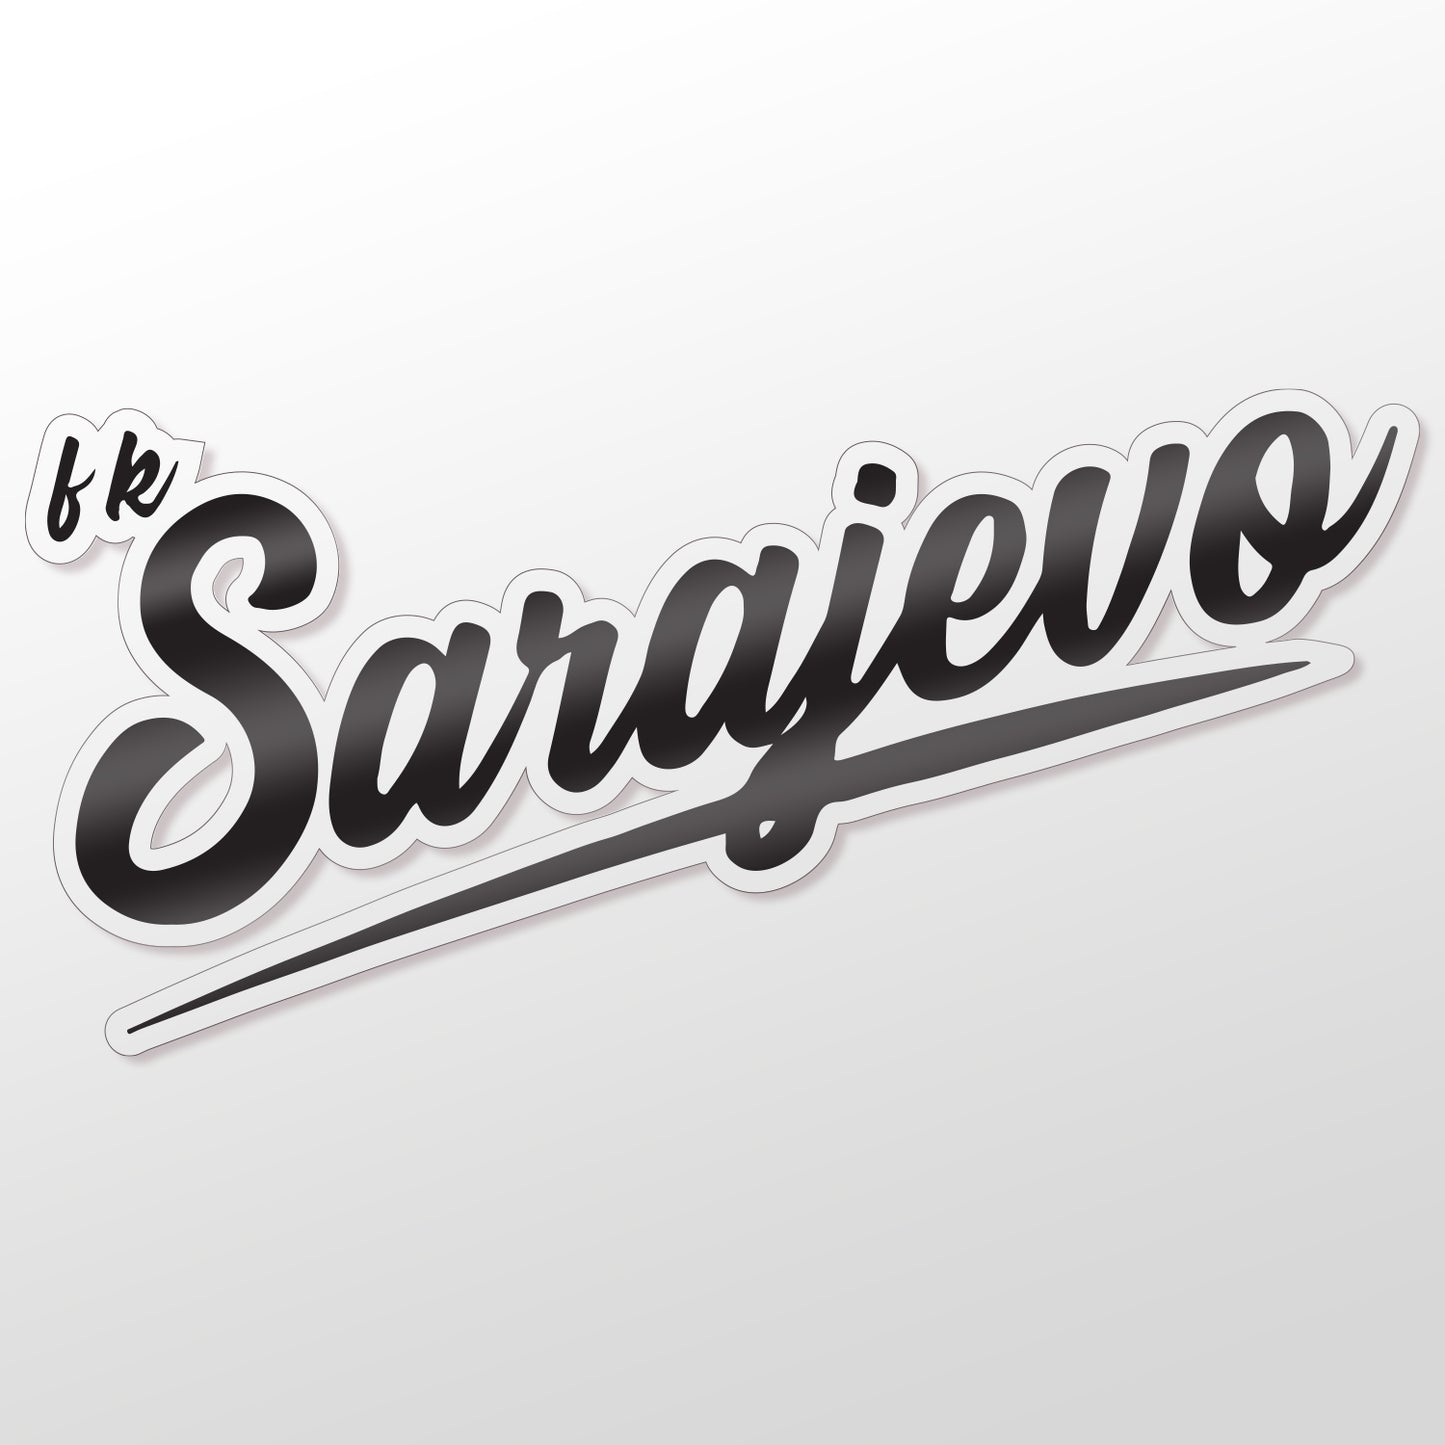 FK Sarajevo Script Decal - Black